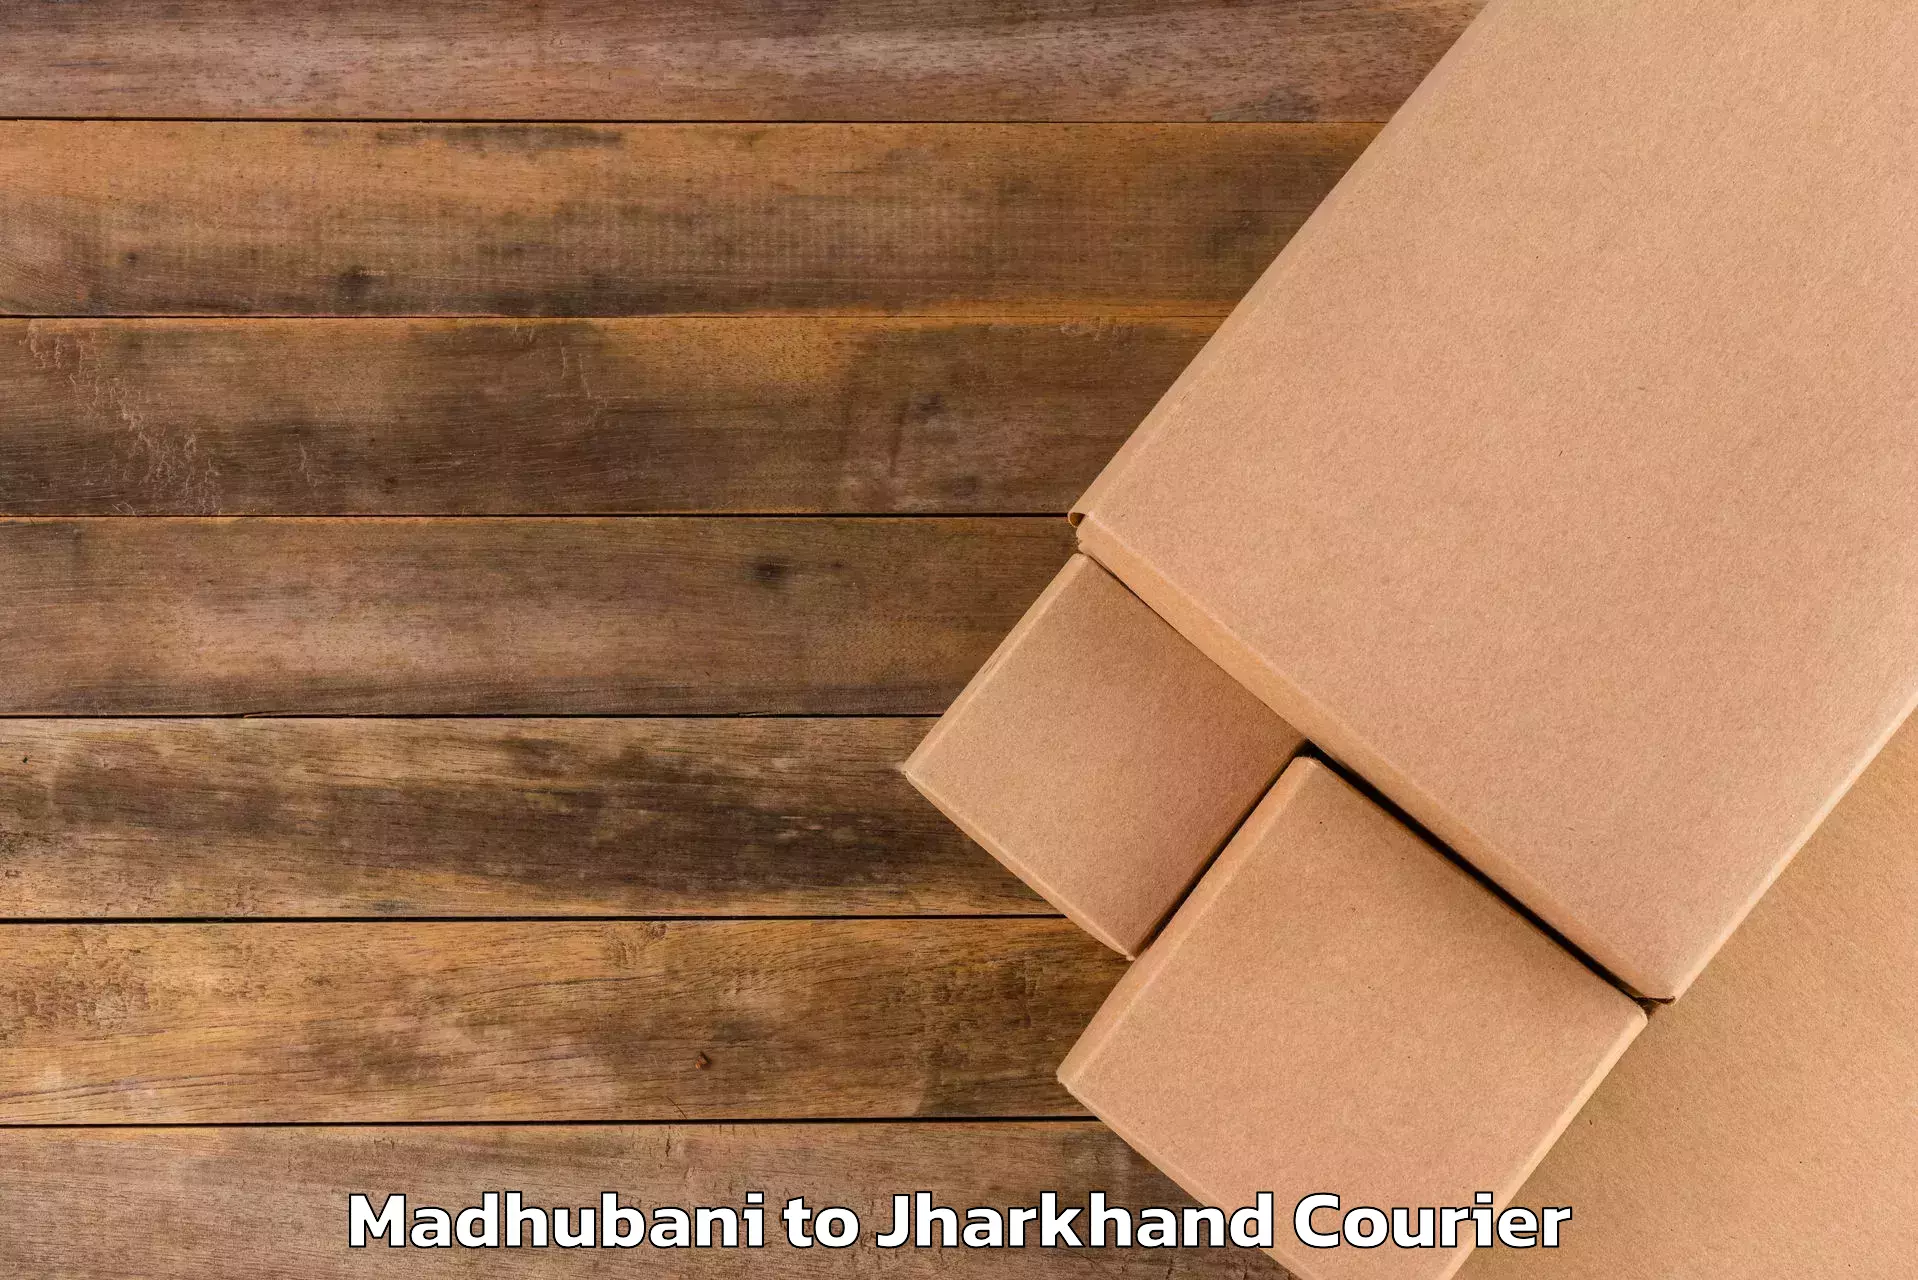 Luggage delivery estimate Madhubani to Topchanchi